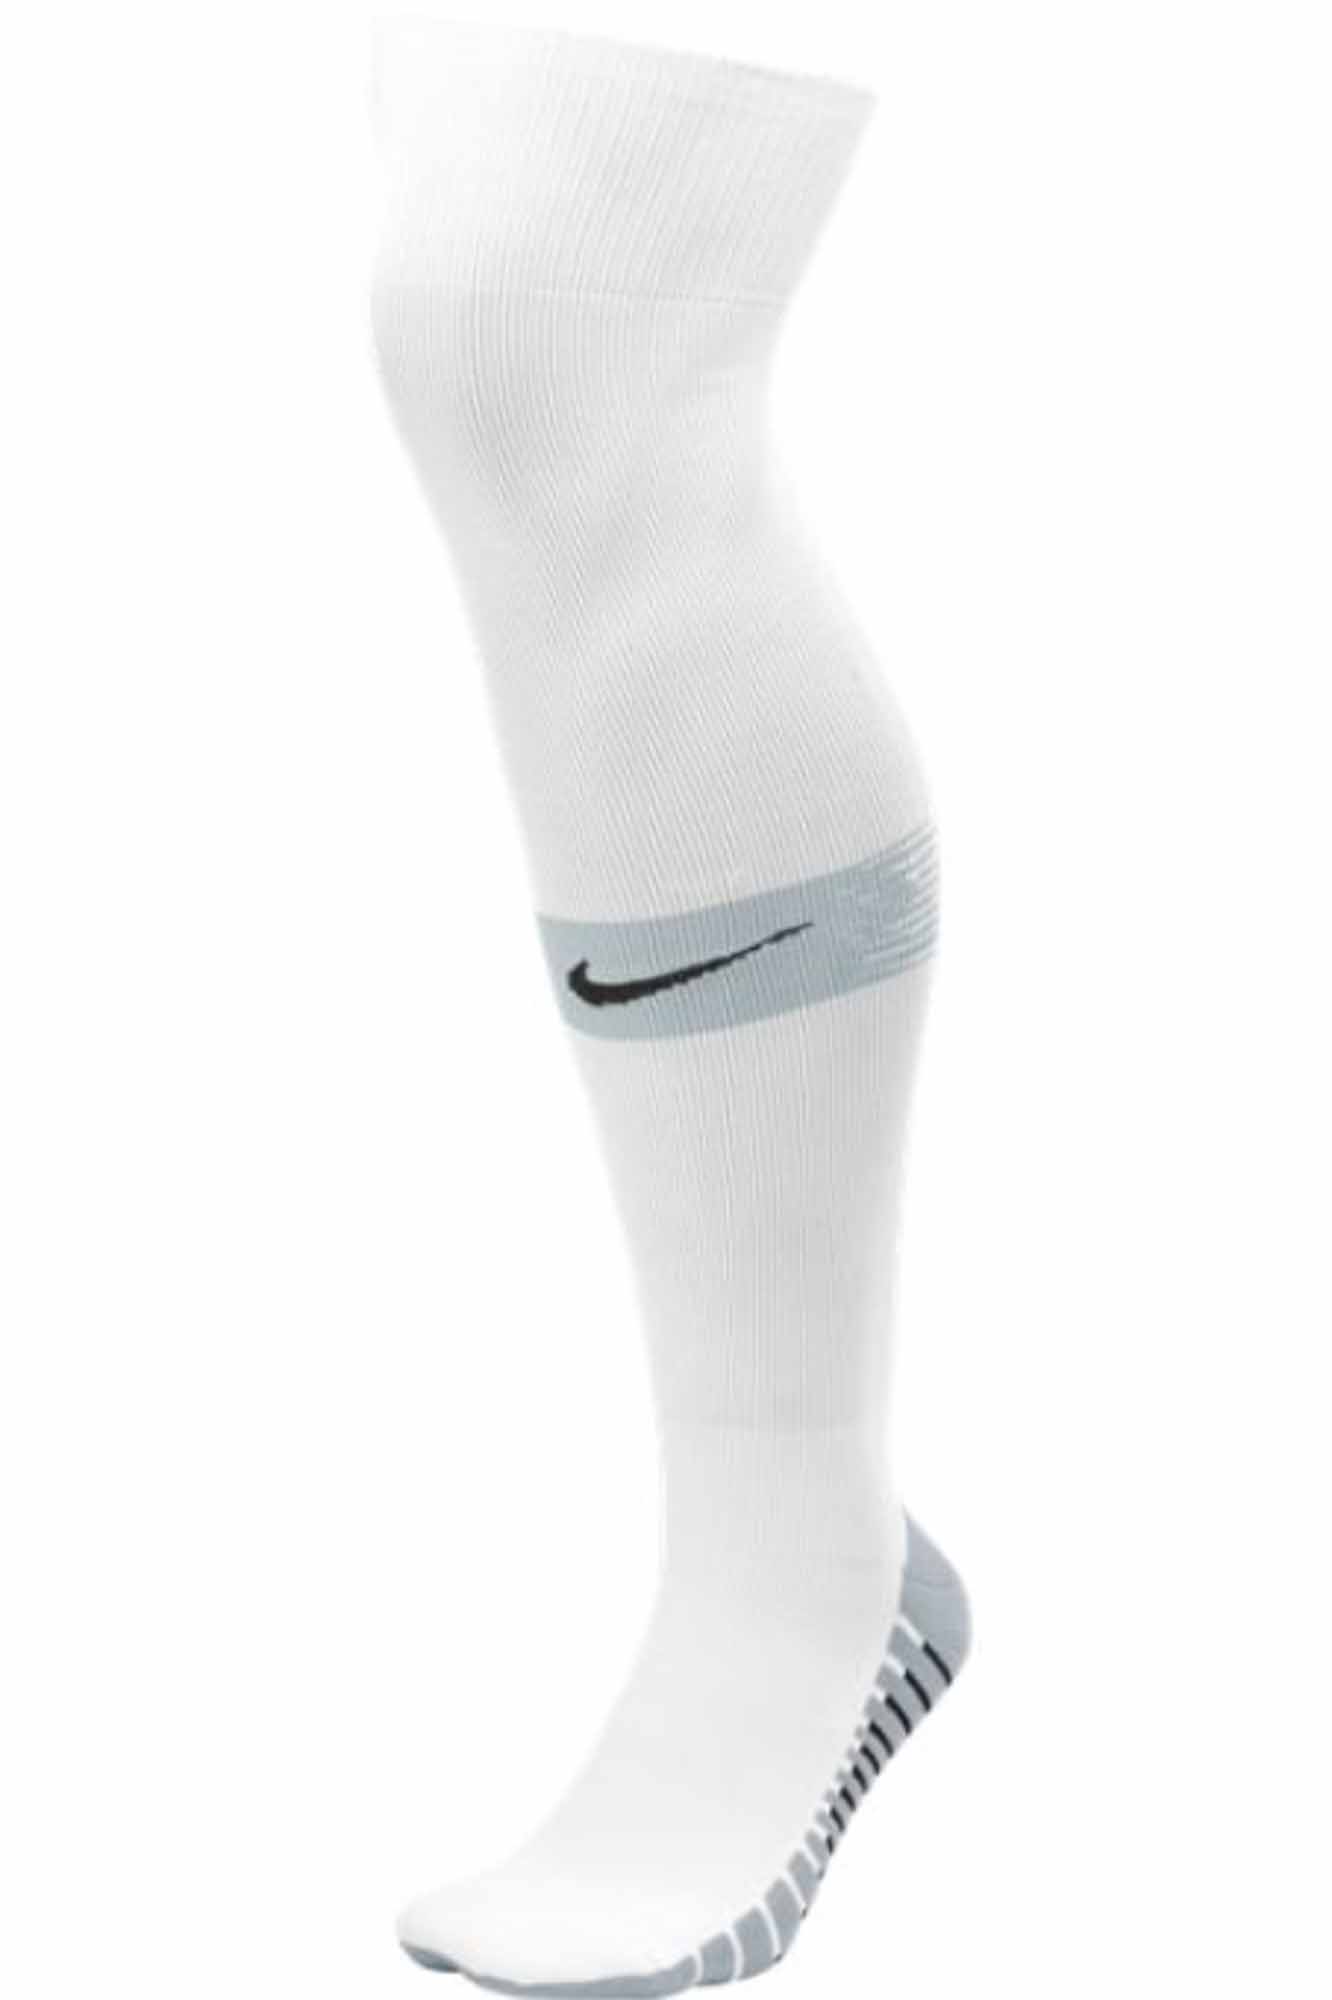 Nike Team Matchfit Soccer Socks - White 